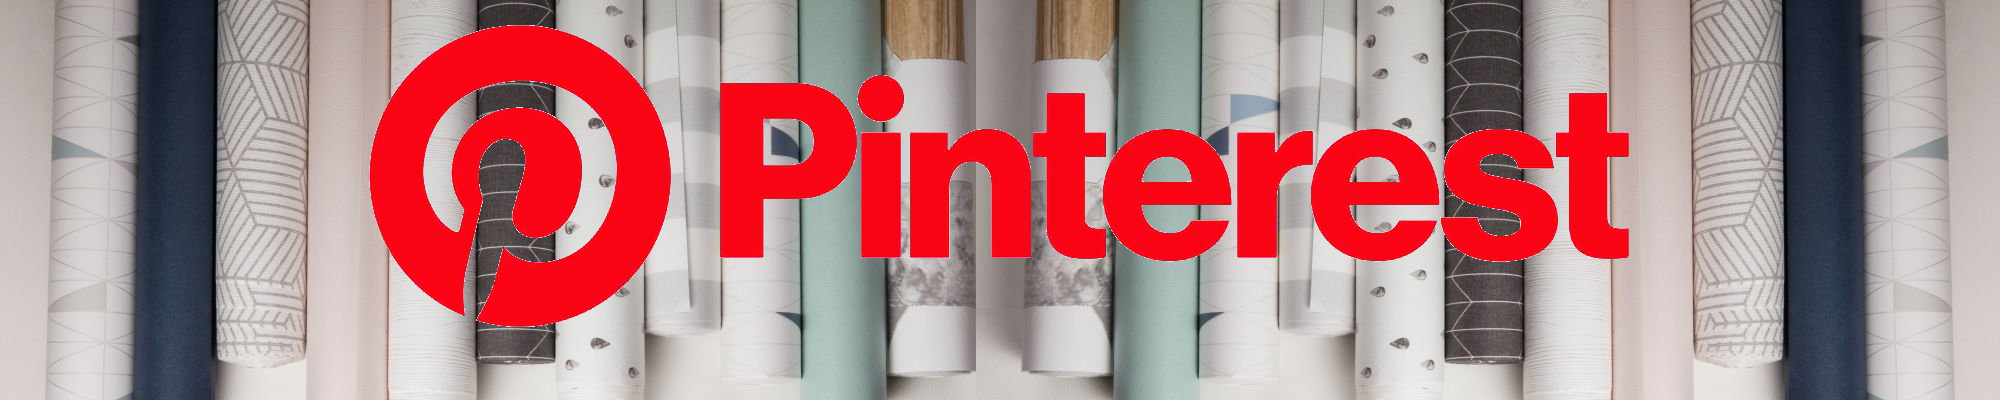 Pinterst-Logo-Header-Banner-2000x400